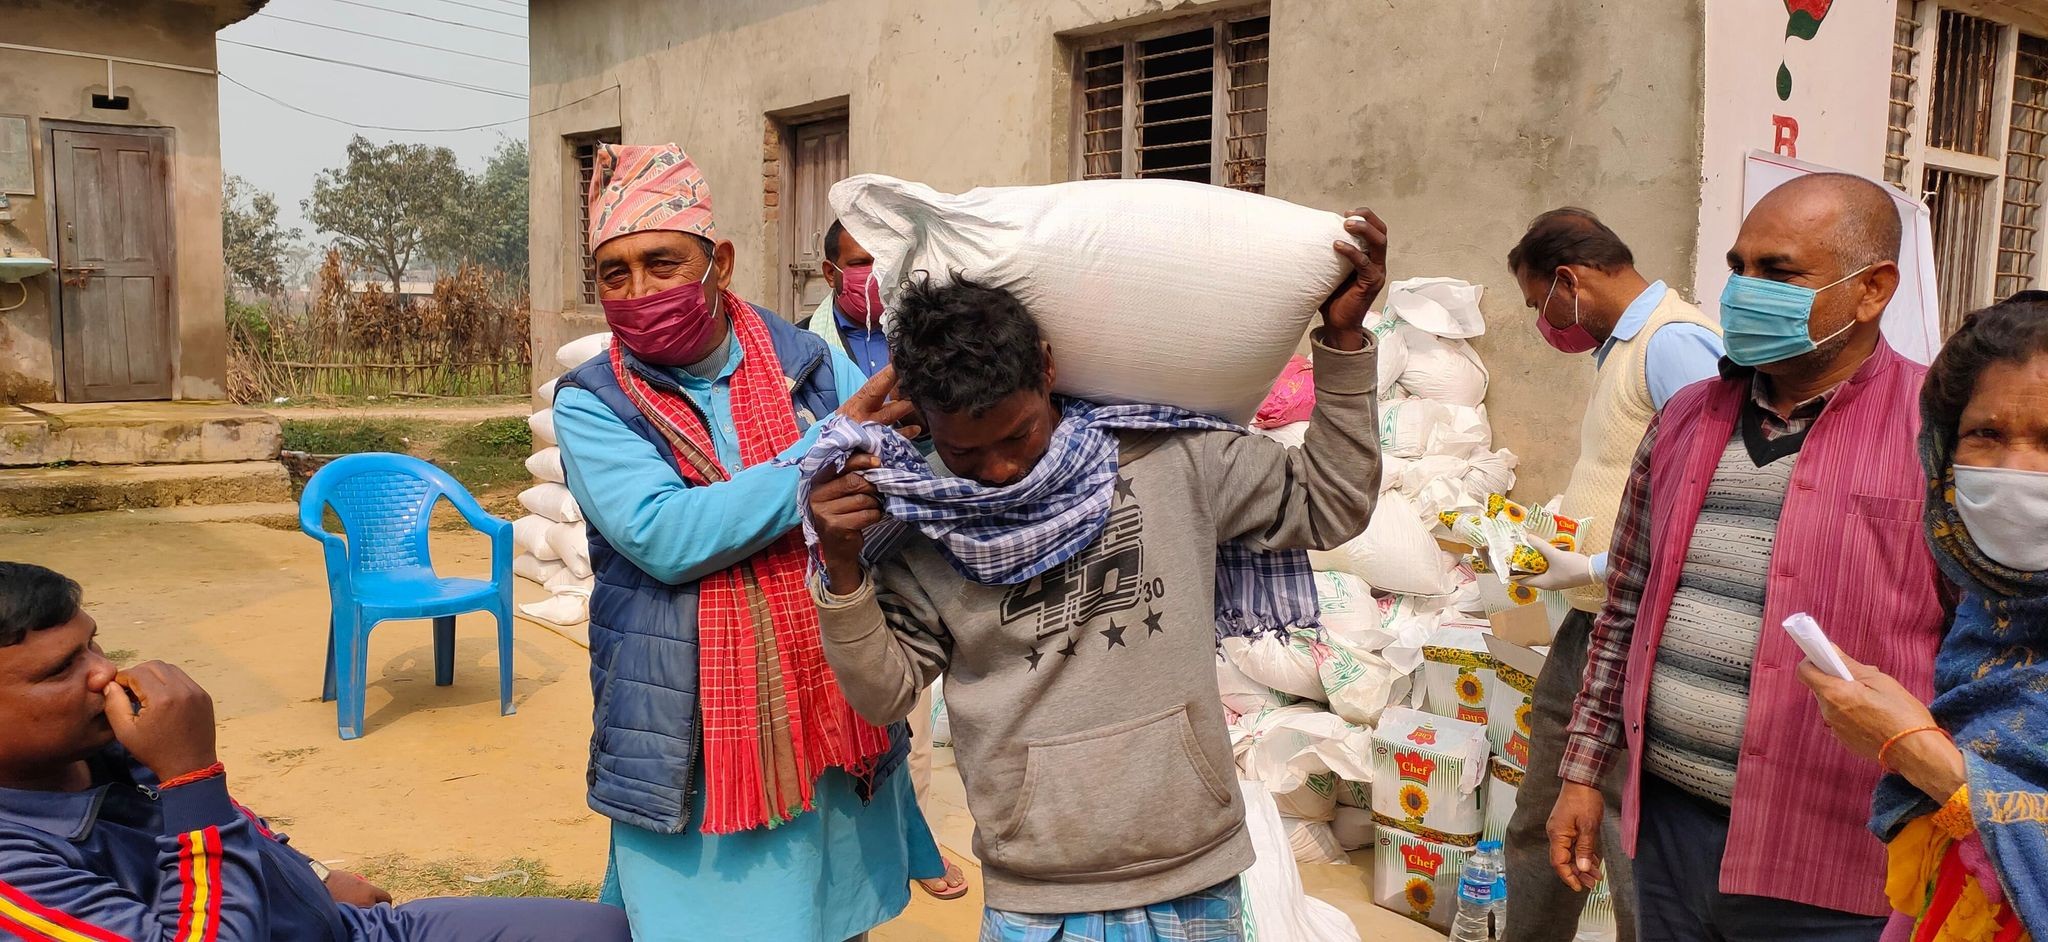 असमान नेपाले र जावास सस्थाको सहयोगमा ५०० घर परिवारलाई खाद्यान्न सामाग्री वितरण